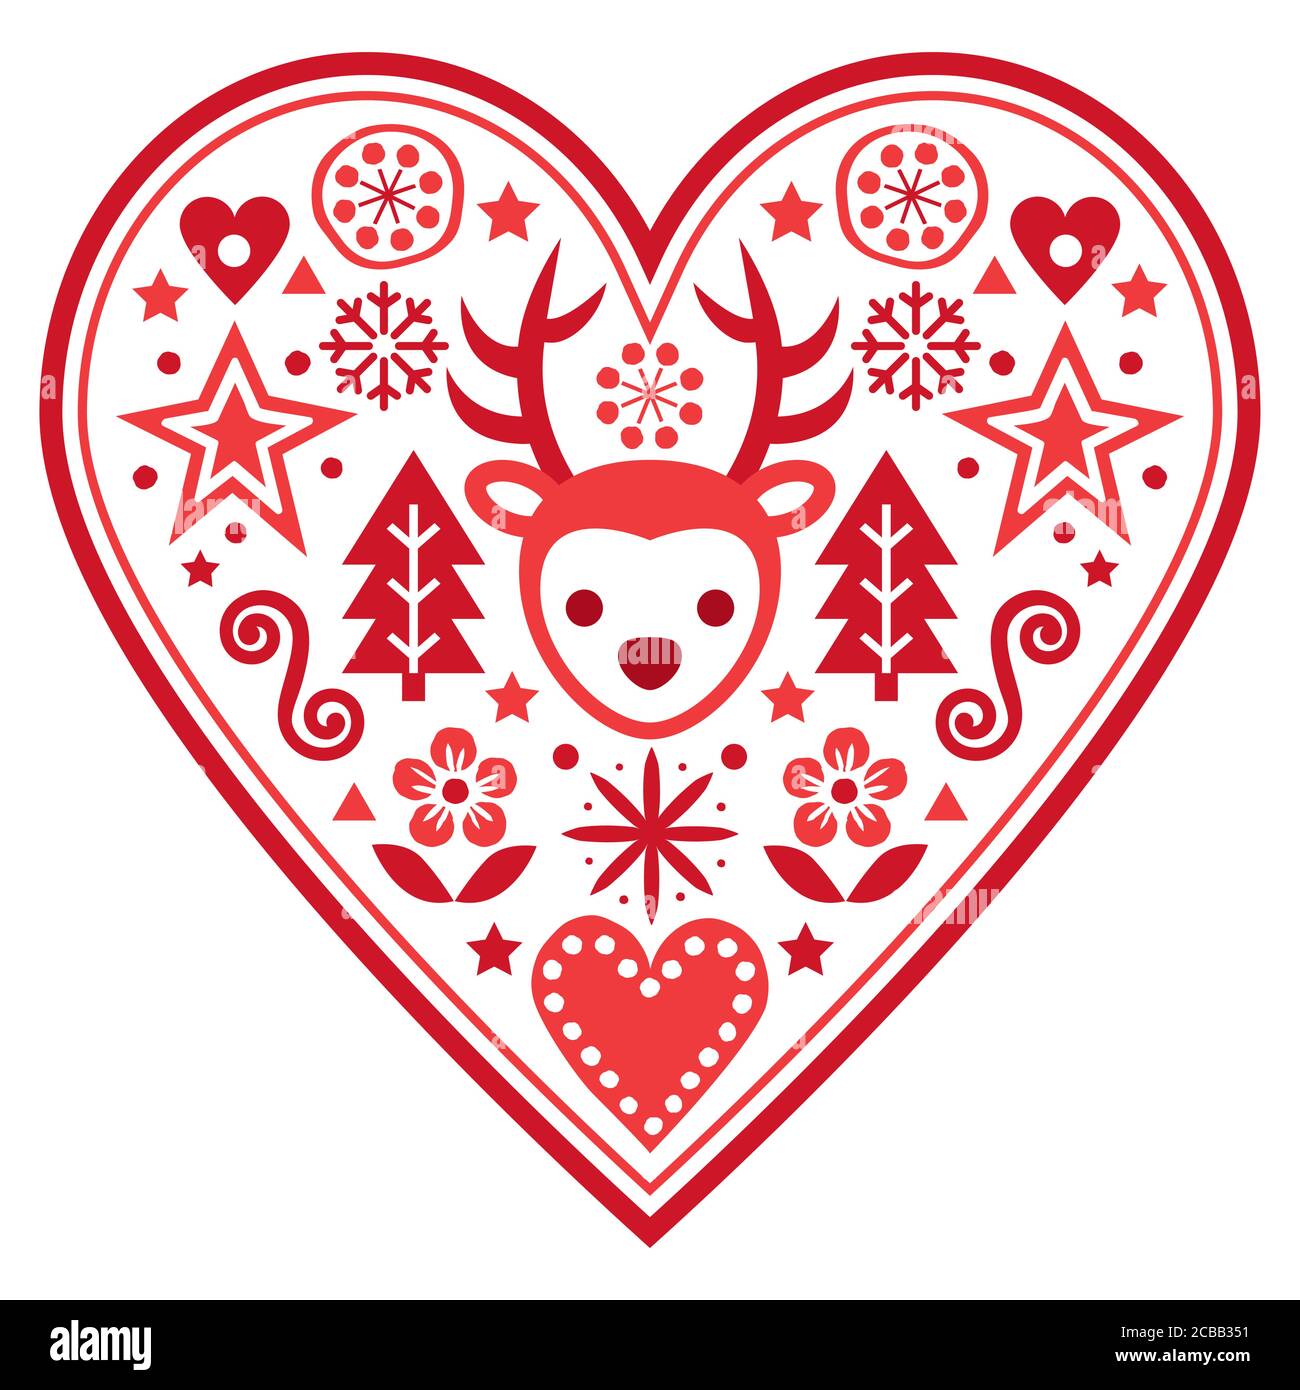 Weihnachten Scandinavian Vektor Herz Grußkarte Design - Folk Art Stil Muster mit Rentieren, Schneeflocken Weihnachtsbäume und Blumen Stock Vektor